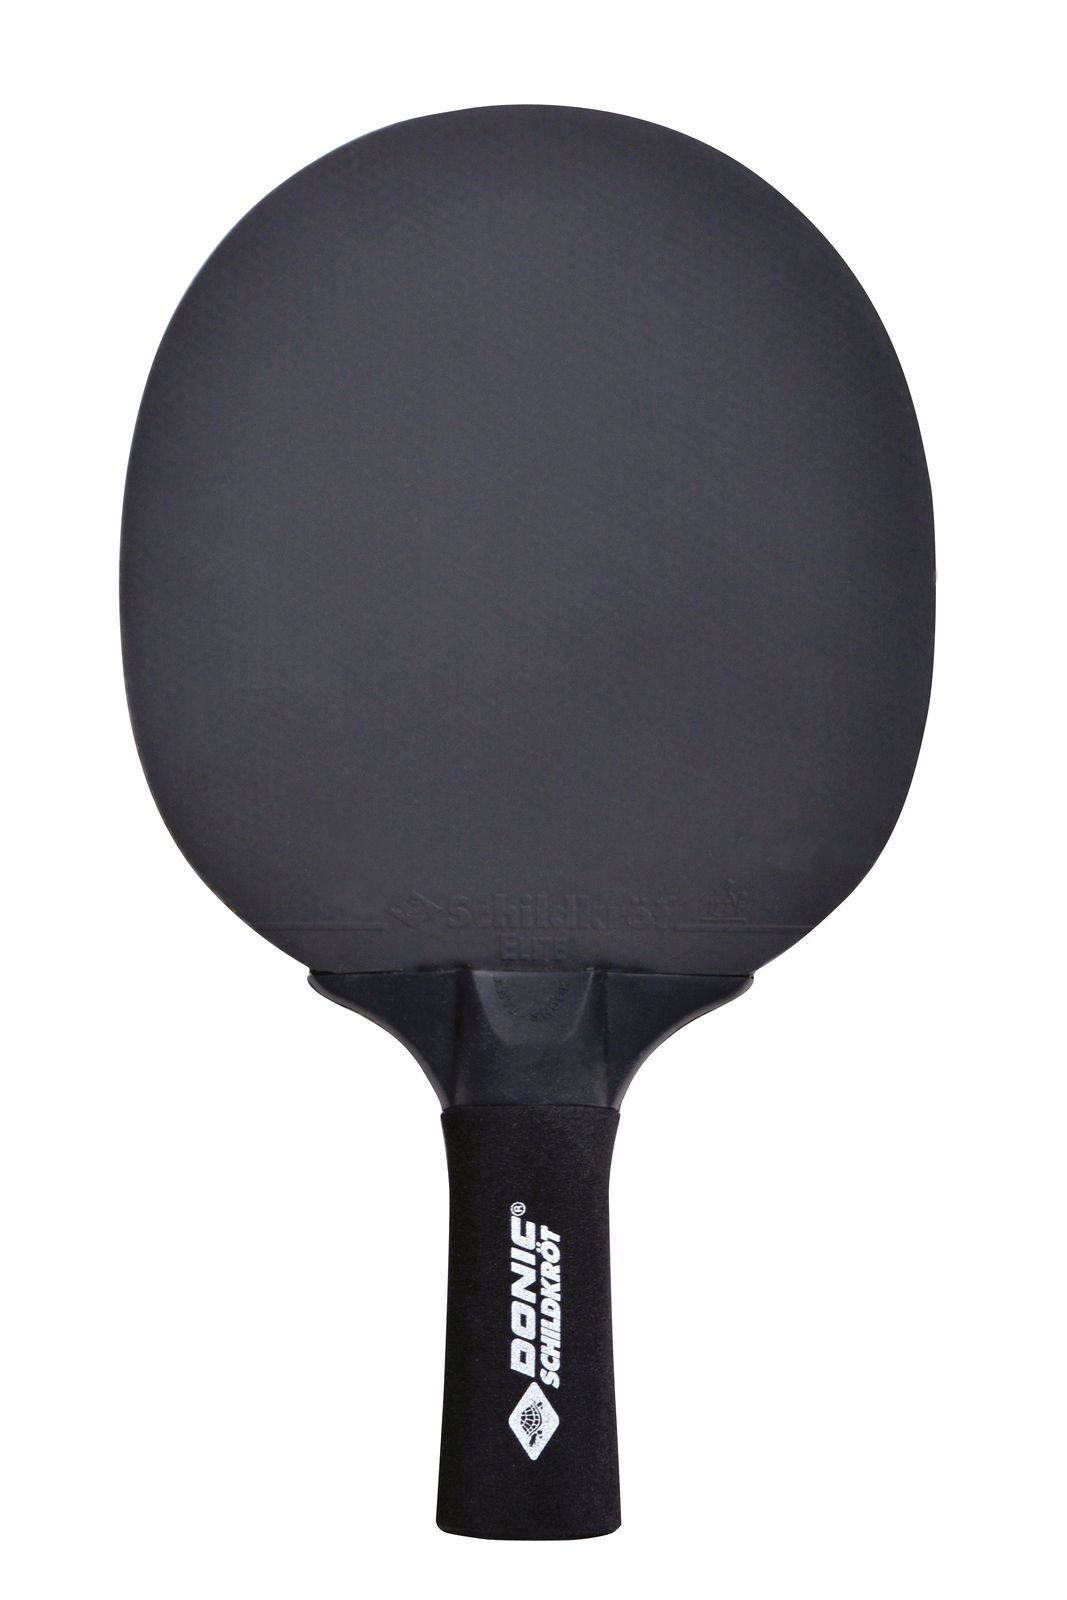 Donic-Schildkröt Tischtennisschläger Sensation Line 500, Schläger Bat Racket Table Tennis Tischtennis